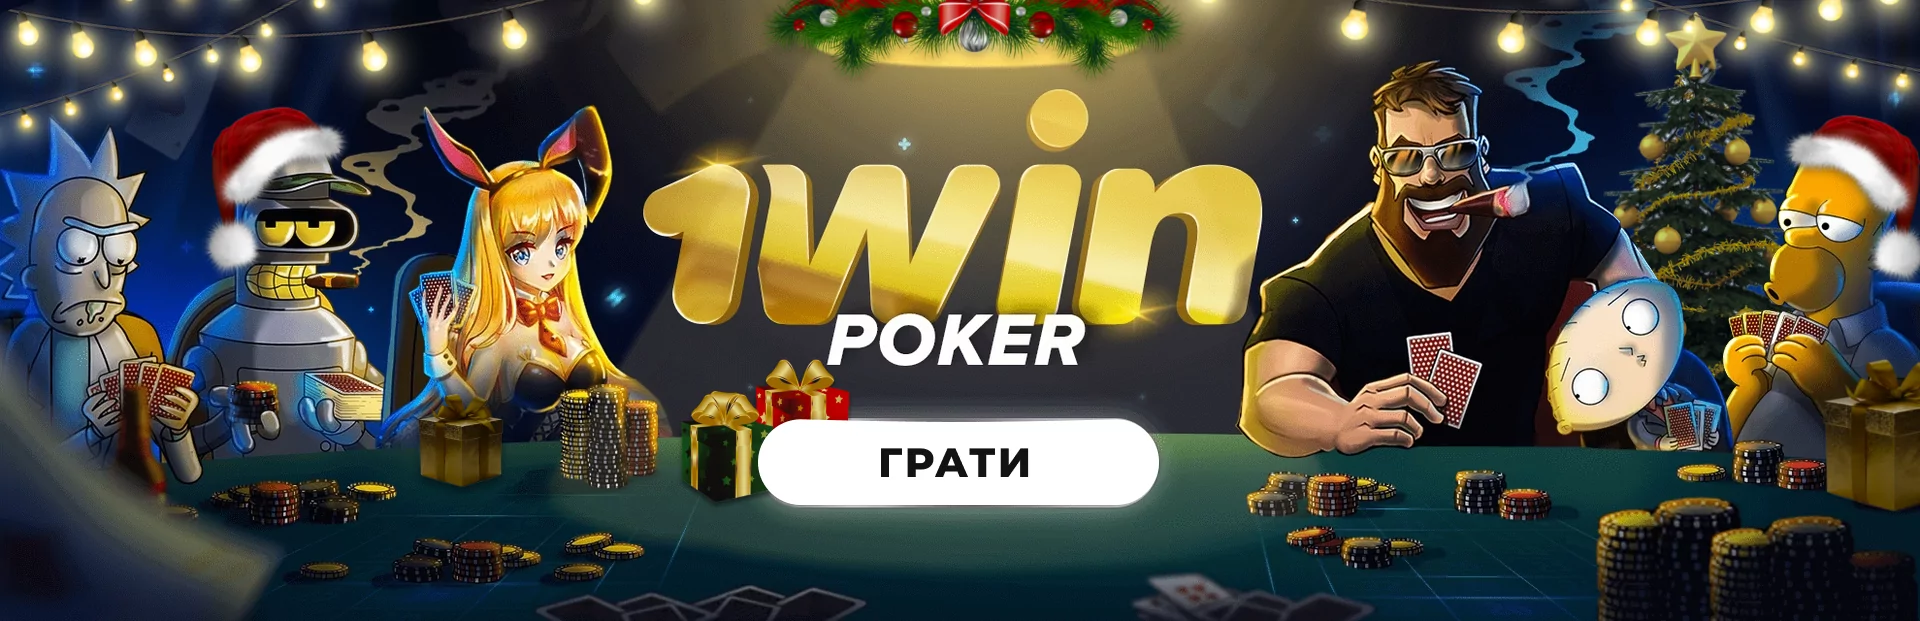 комбінації покер 1win